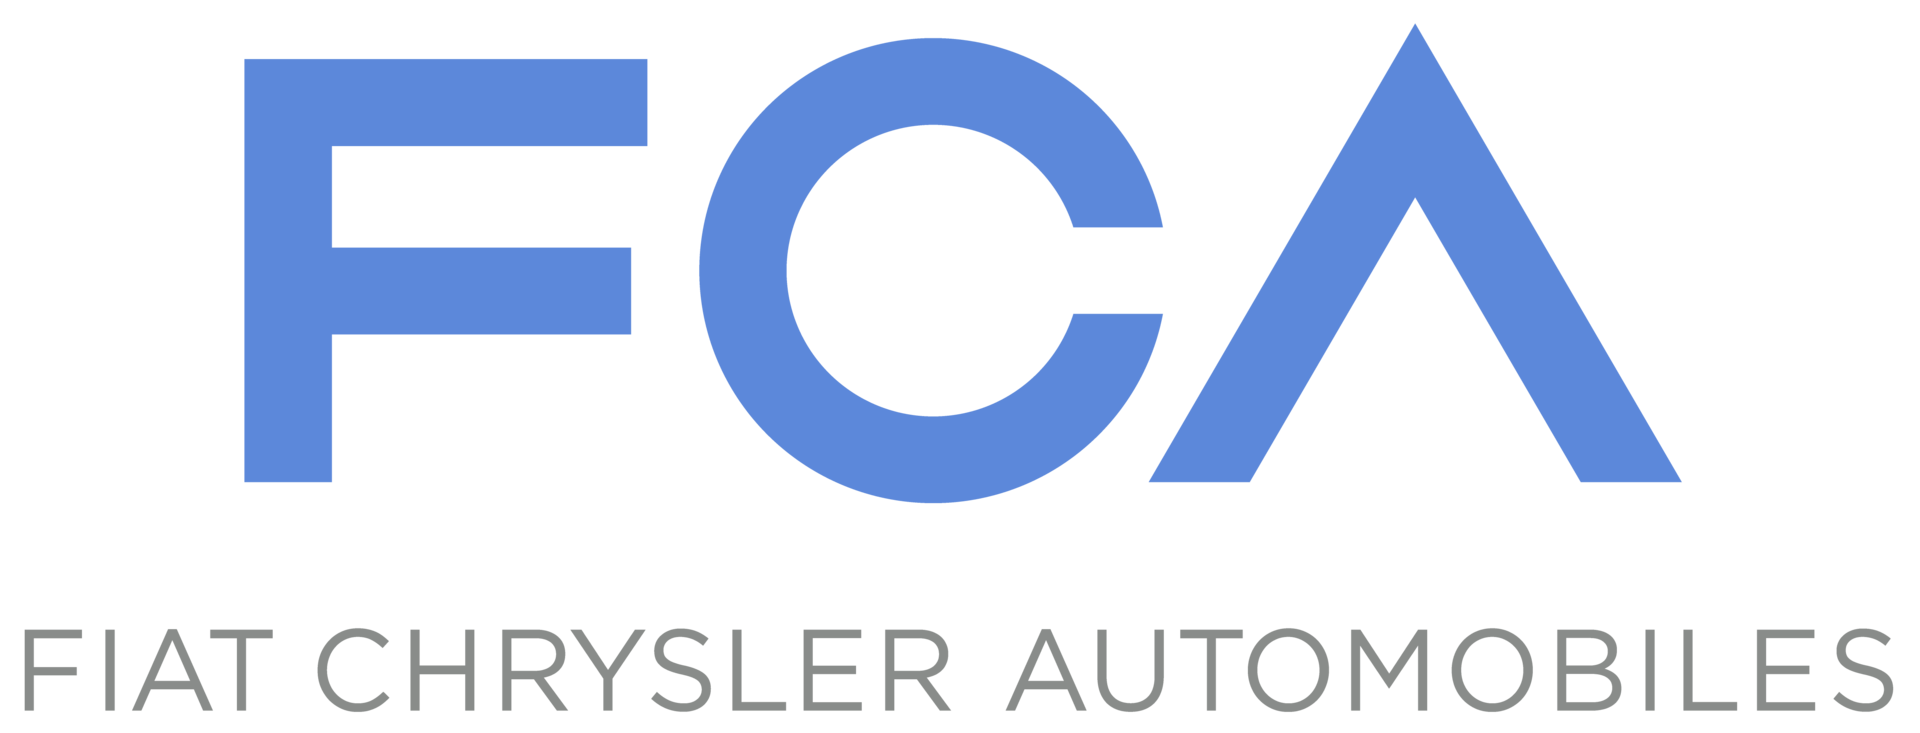 Fiat Chrysler Automobiles - FCA Rus - ЭфСиЭй Рус